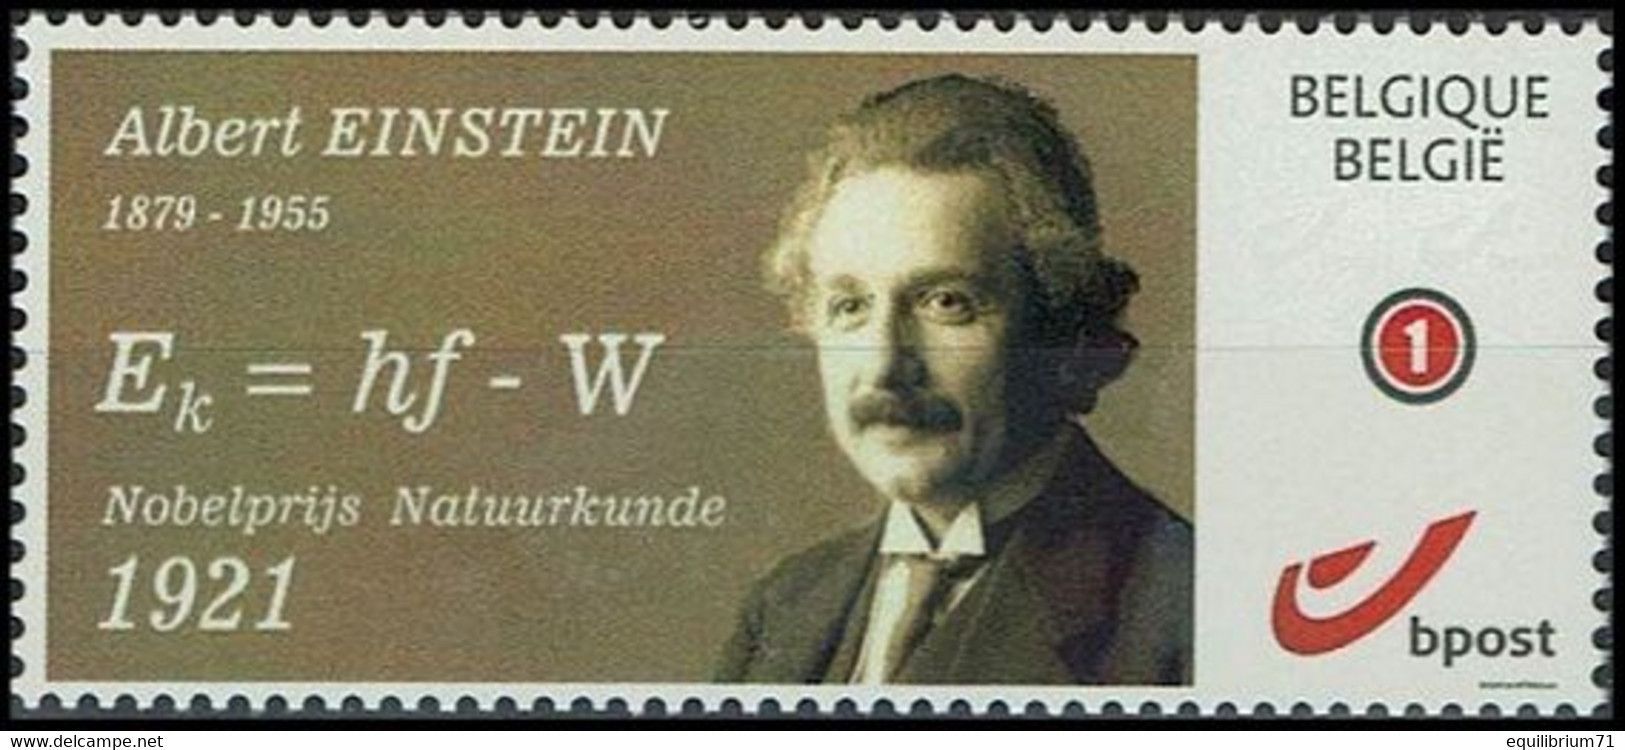 DUOSTAMP** / MYSTAMP**  - Albert Einstein - Prix Nobel De Physique / Fysica Nobelprijs / Nobelpreis Für Physik - 1921 - Albert Einstein